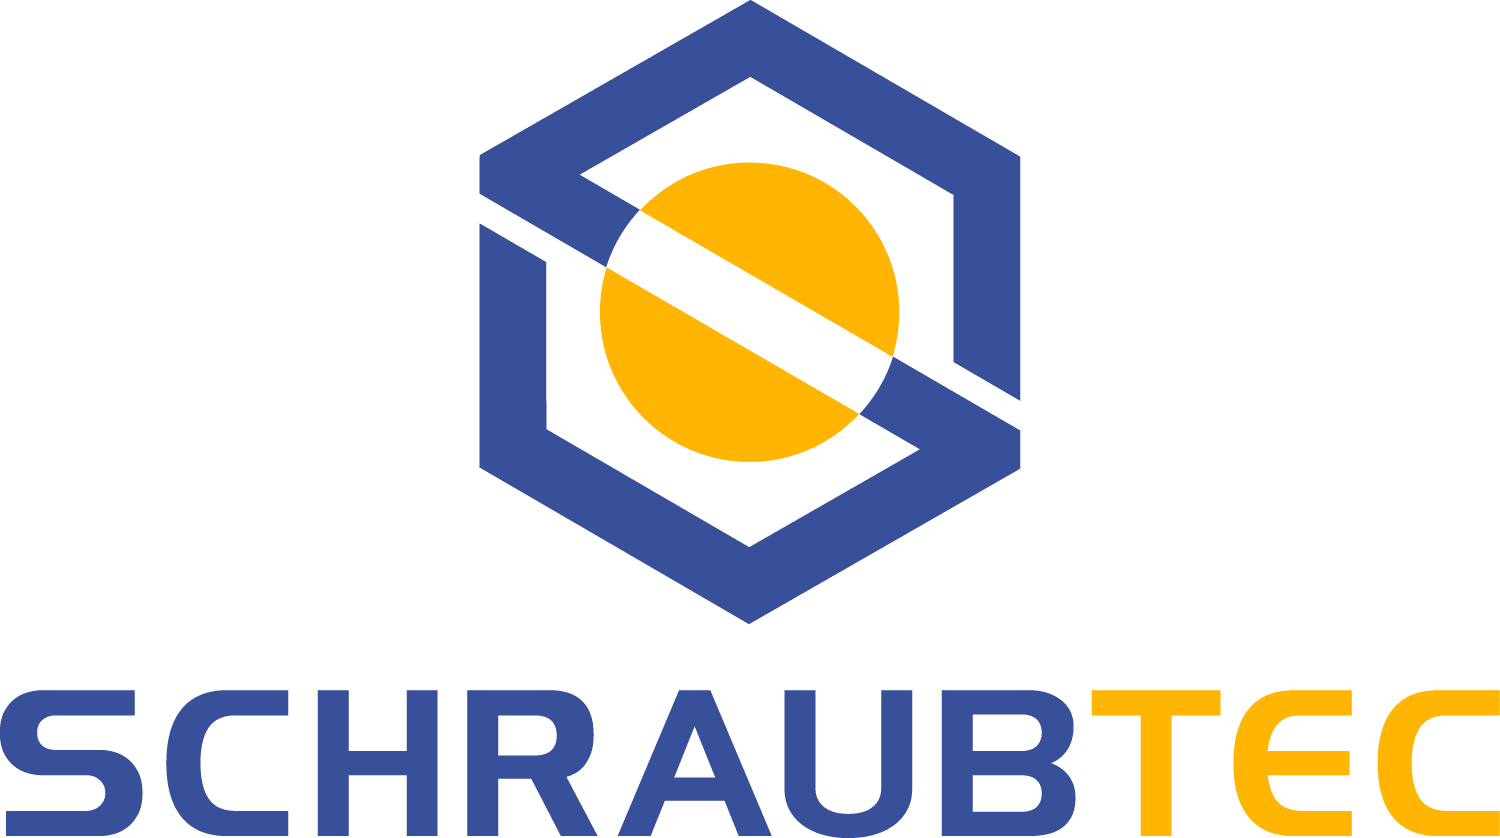 SCHRAUBTEC logo HYTORC Deutschland